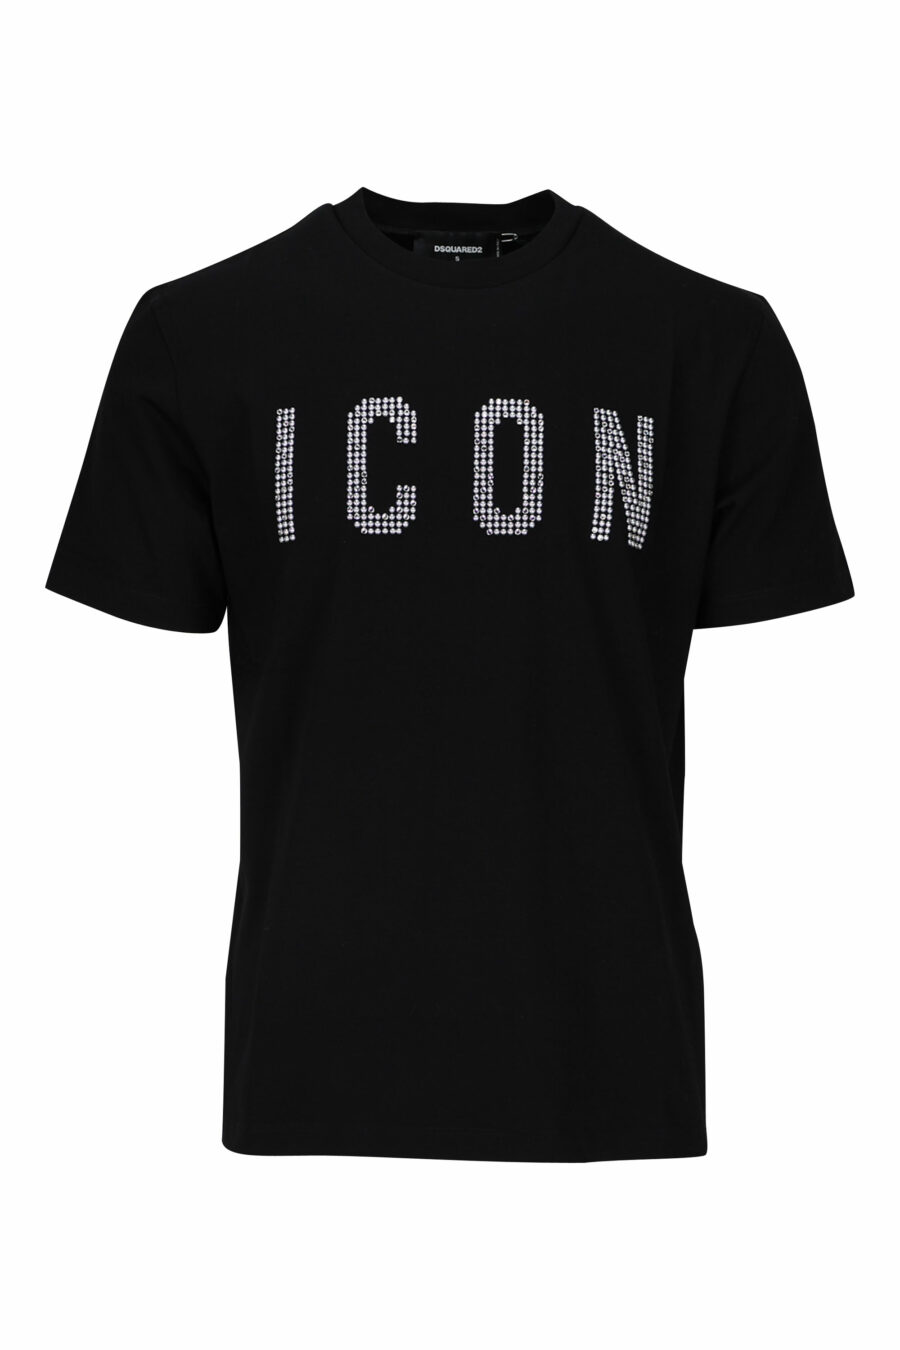 T-shirt preta com logótipo "icon" axadrezado branco - 8052134981399